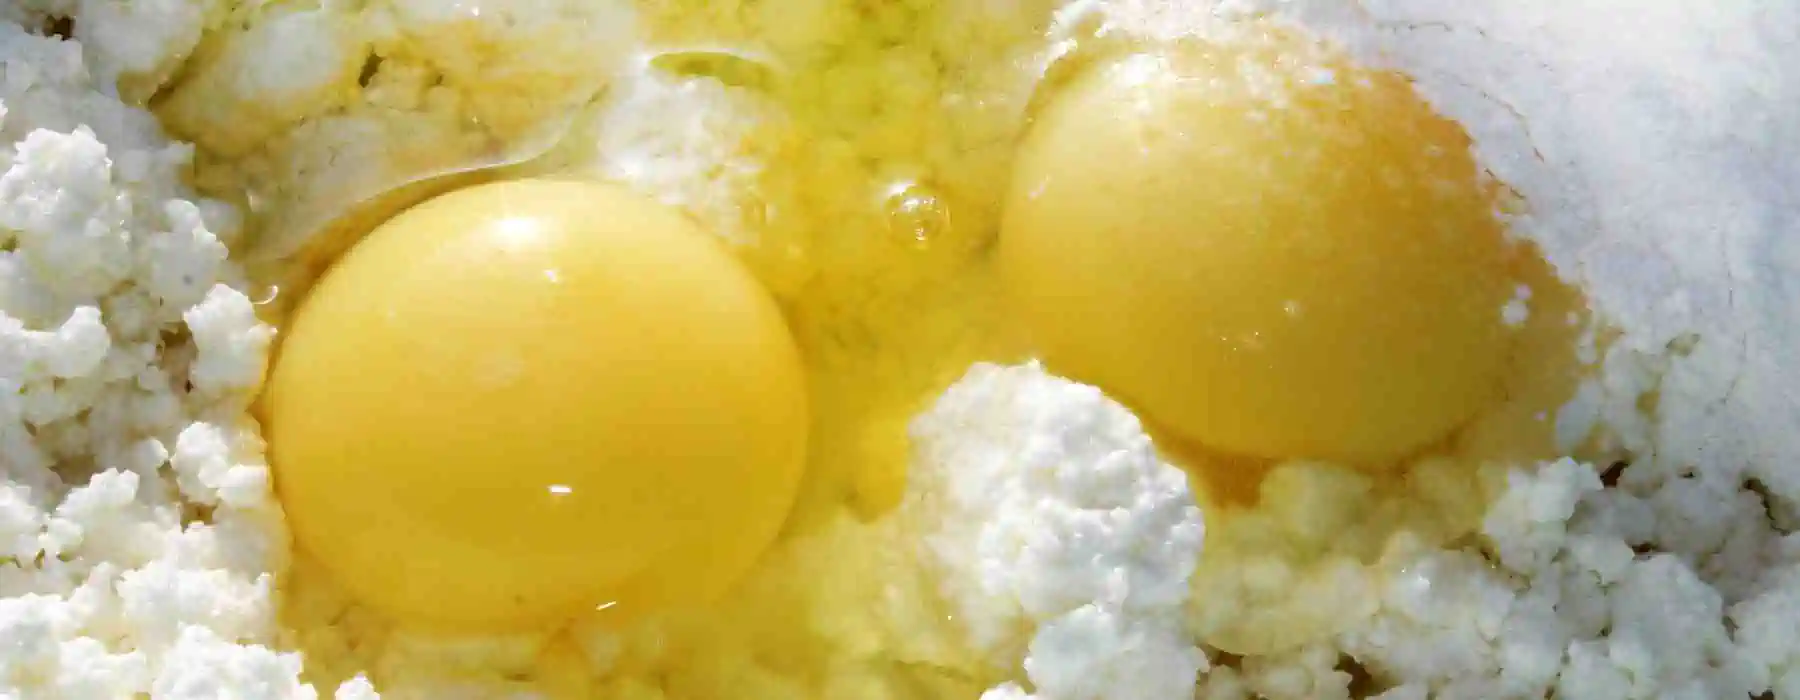 взбитые яйца в классическом чизкейке